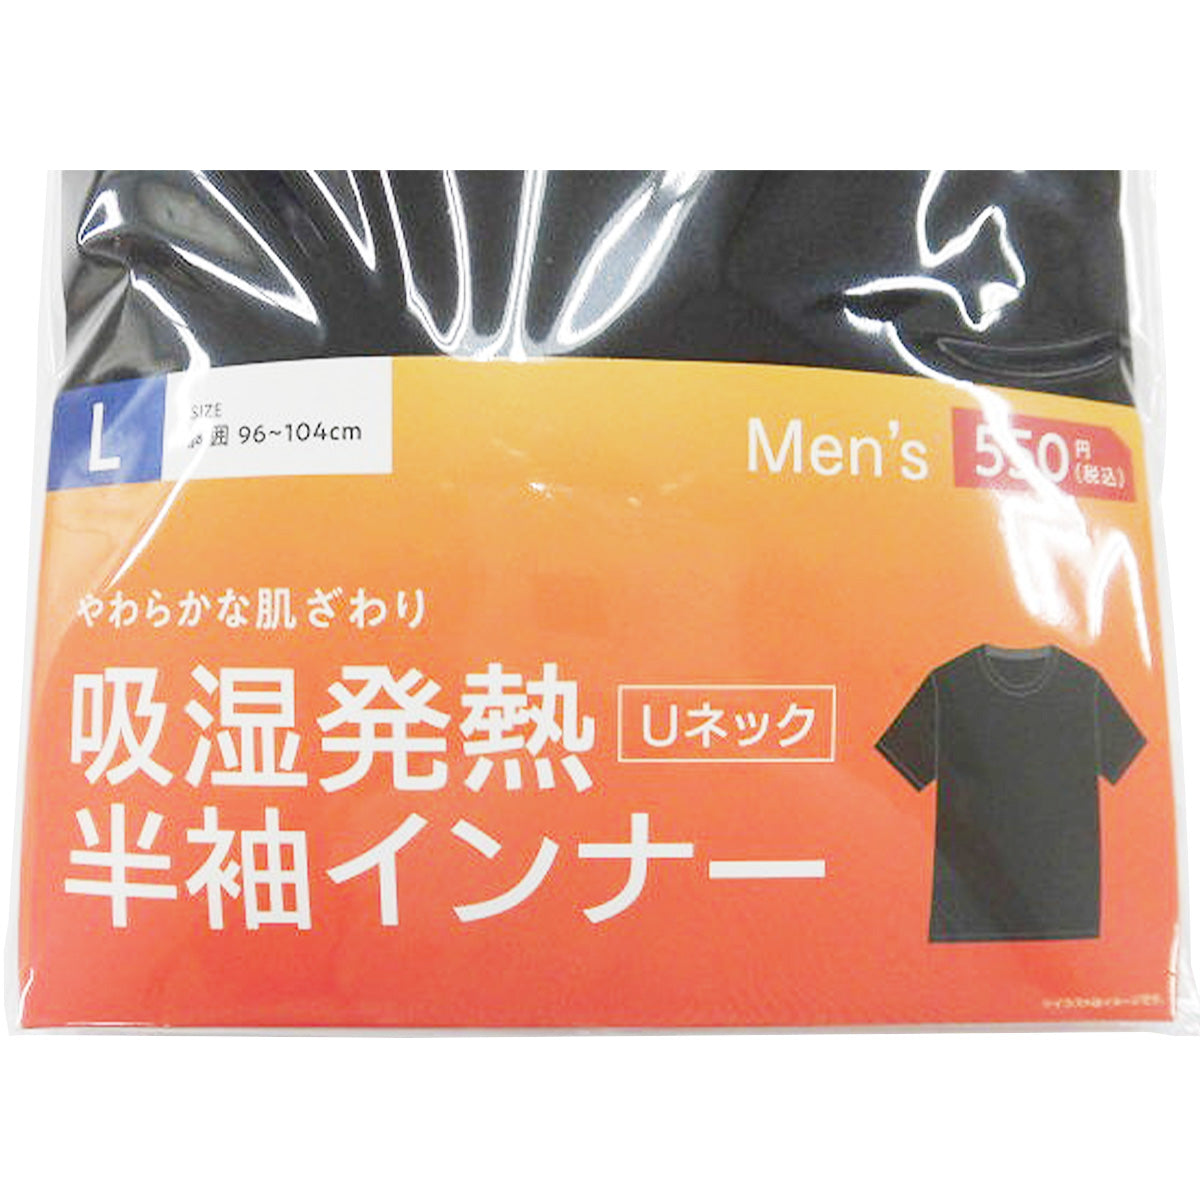 【在庫限り】Tシャツ 吸湿 下着 半袖シャツ 紳士 メンズ用インナー レーヨン L 304324